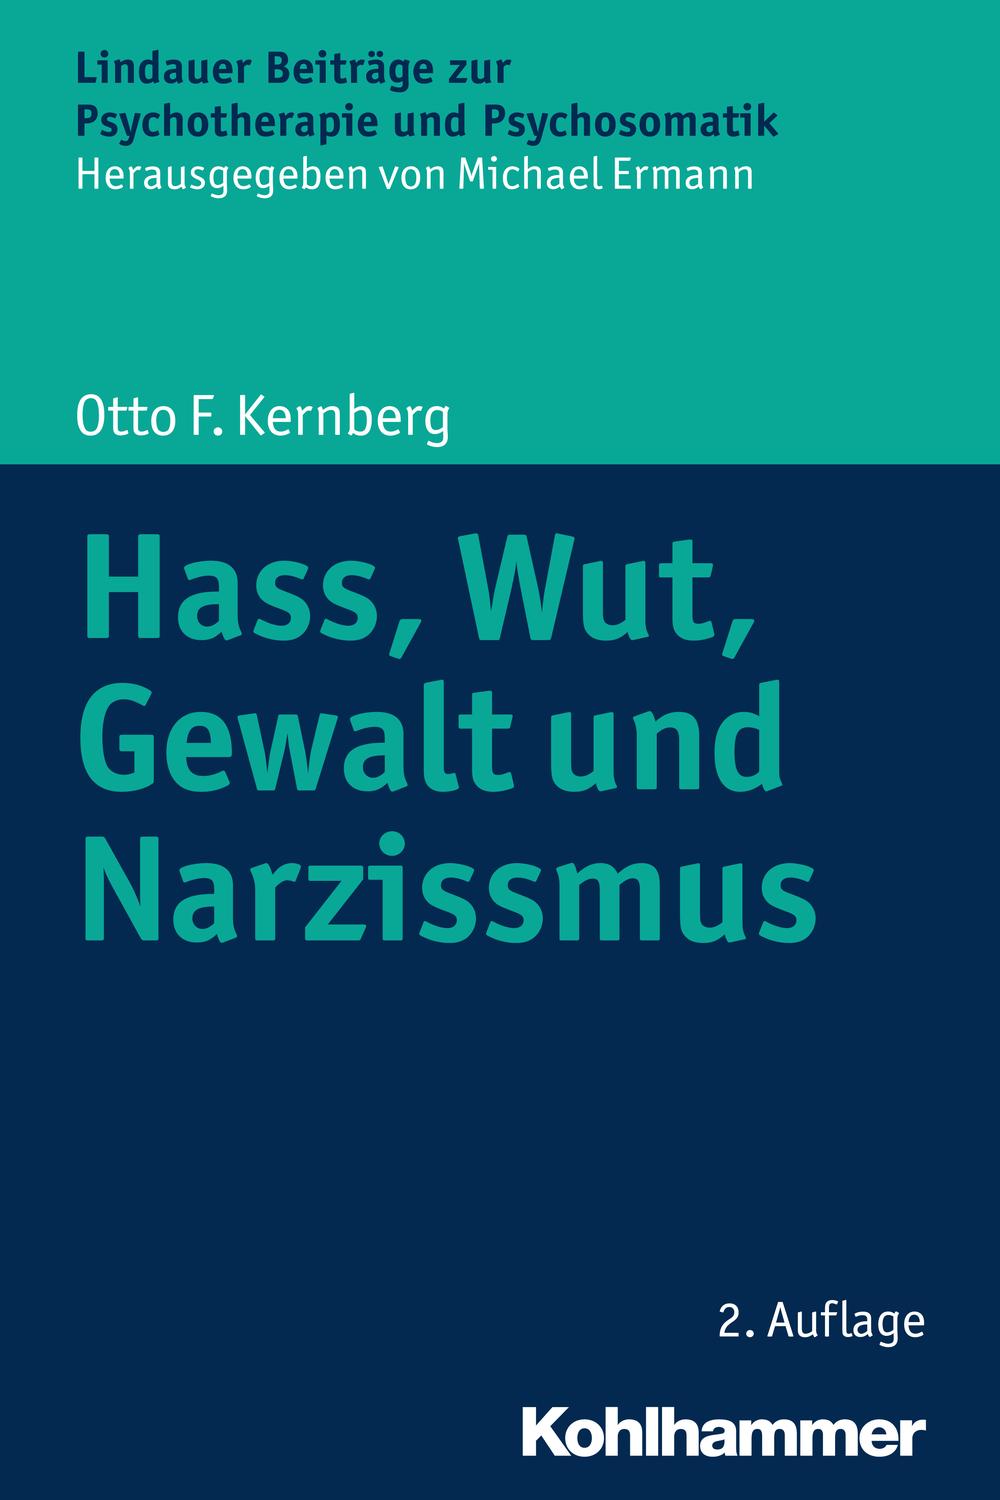 Hass, Wut, Gewalt und Narzissmus - Otto F. Kernberg,Michael Ermann,